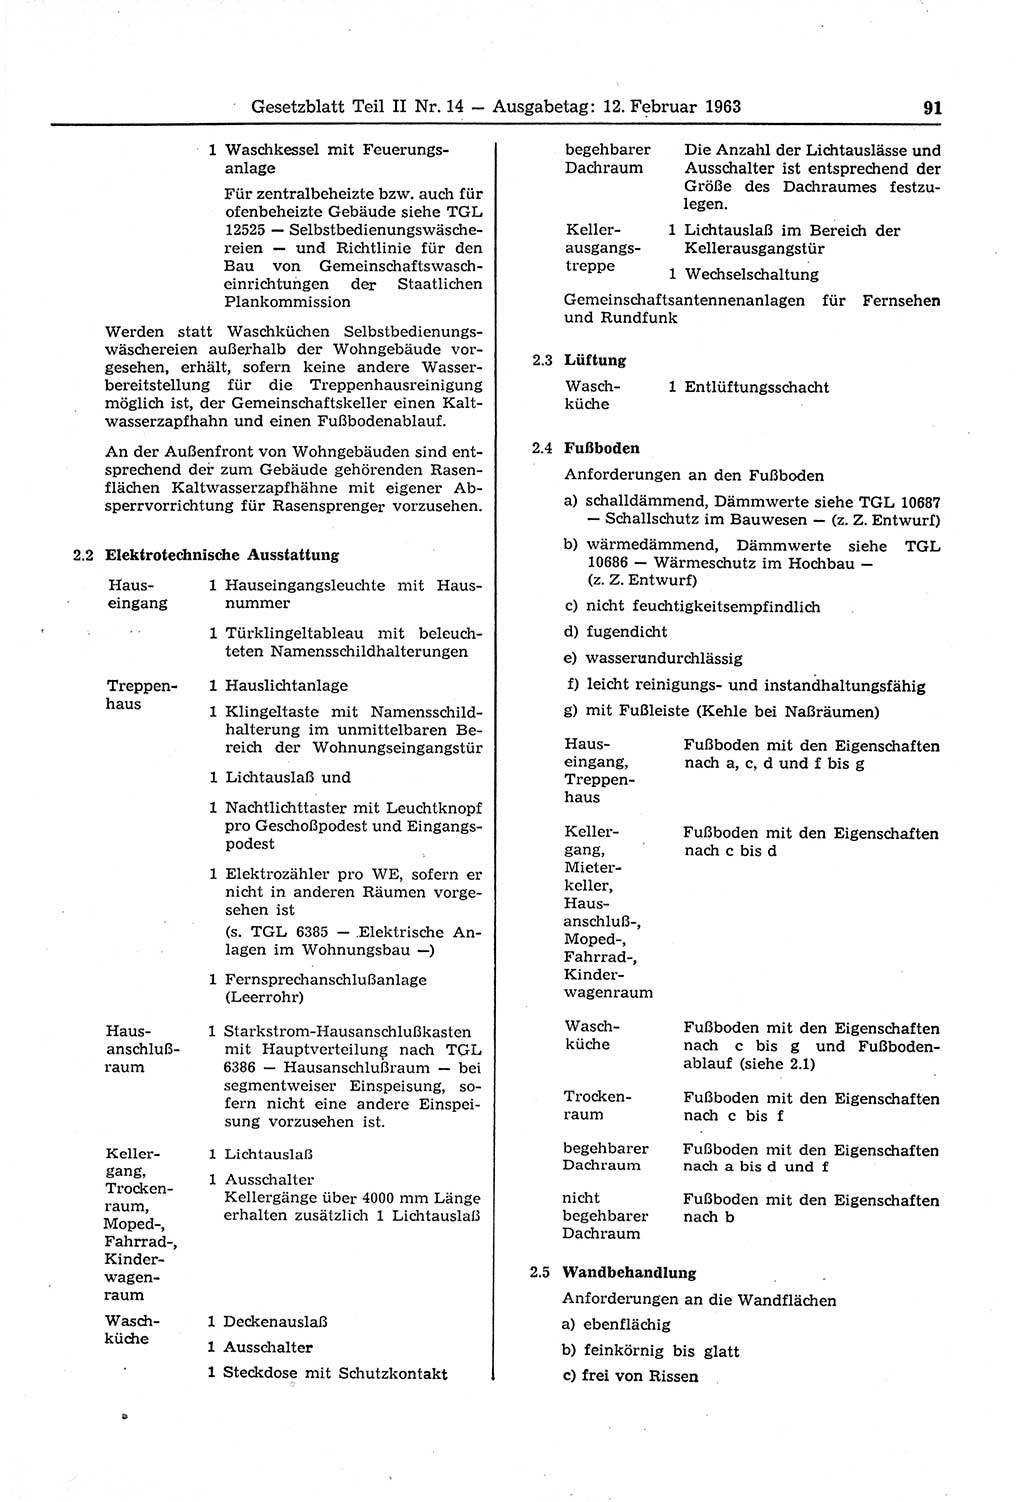 Gesetzblatt (GBl.) der Deutschen Demokratischen Republik (DDR) Teil ⅠⅠ 1963, Seite 91 (GBl. DDR ⅠⅠ 1963, S. 91)